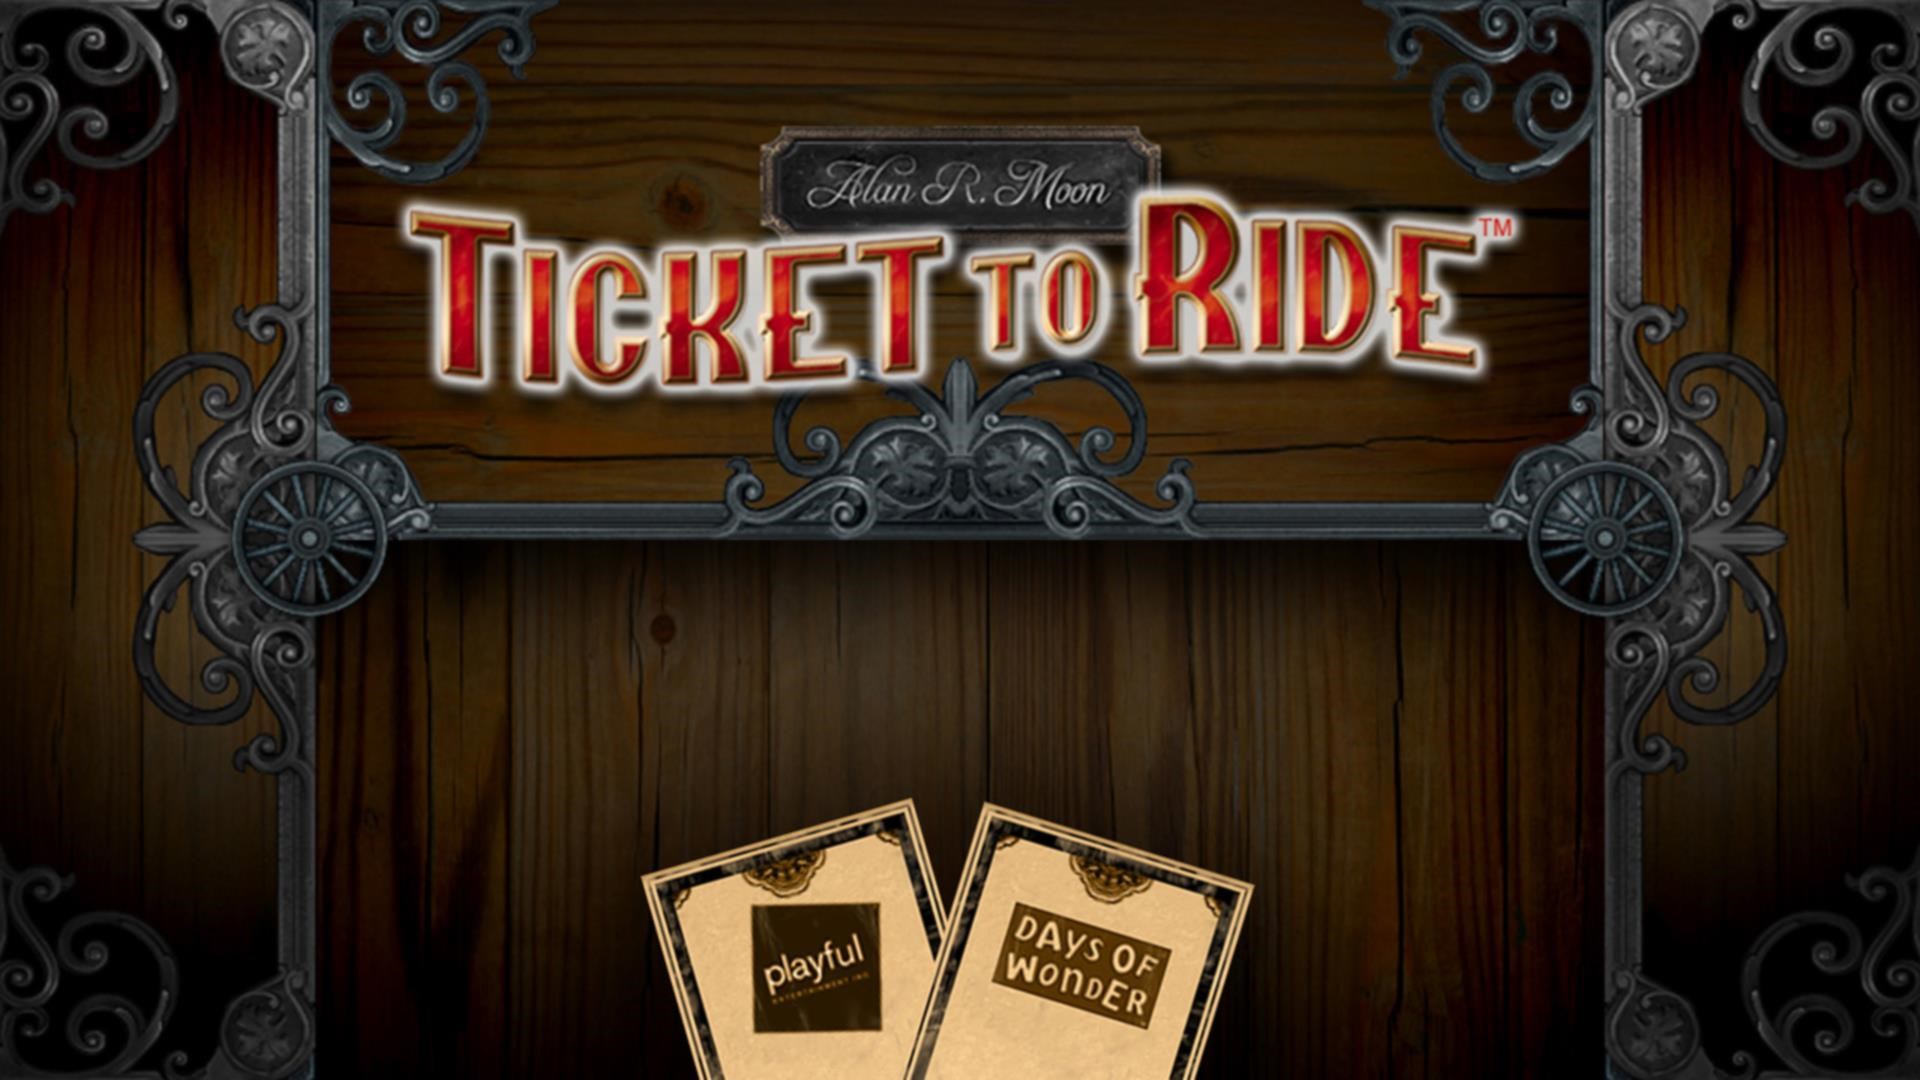 Buy Ticket to Ride Europe™ - Microsoft Store en-GB